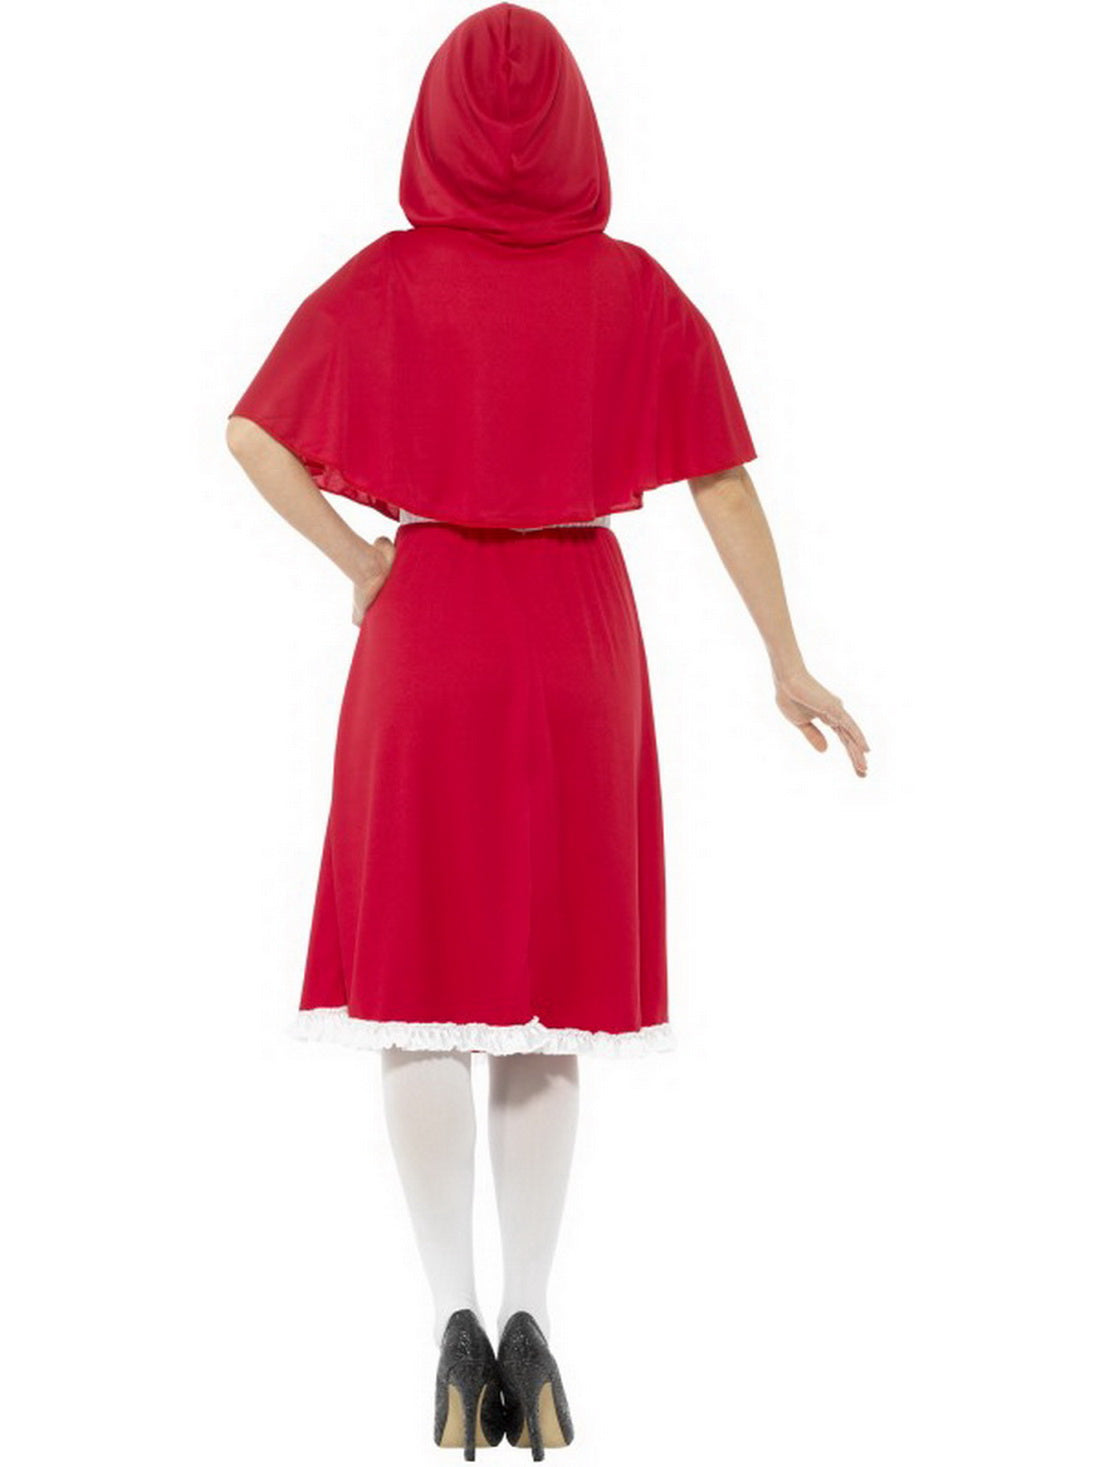 Damen Frauen Rotkäppchen Kostüm mit langem Kleid mit Kapuze, perfekt für Karneval, Fasching und Fastnacht, XS, Rot